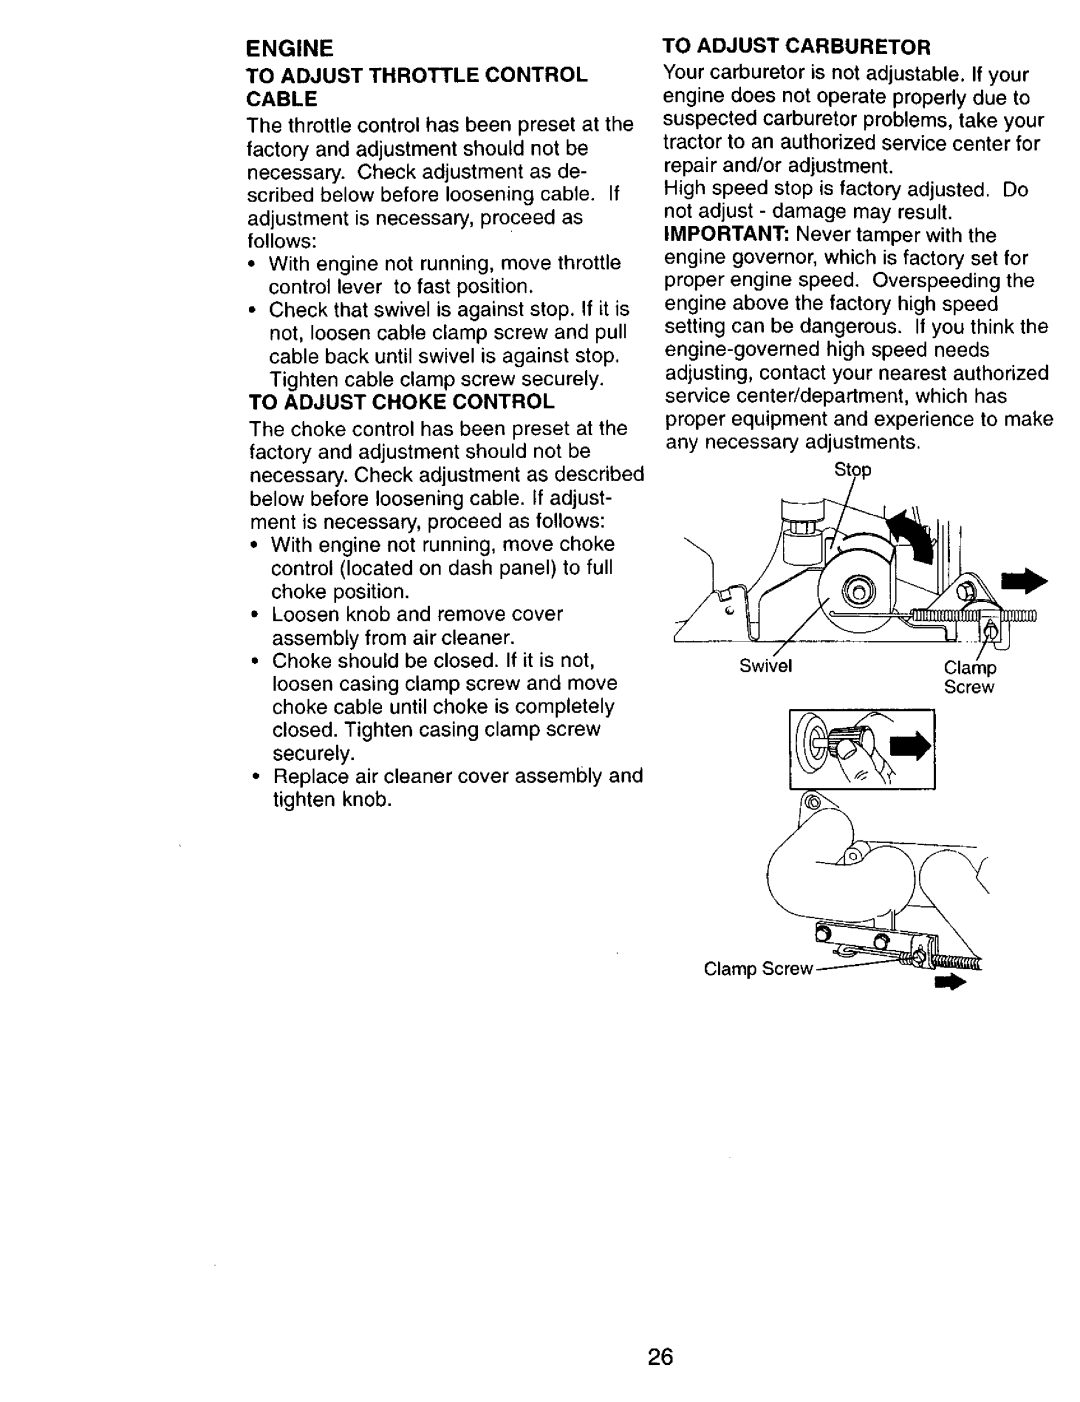 Craftsman 917.270751 owner manual To Adjust Throttle Control Cable, To Adjust Choke Control, To Adjust Carburetor 